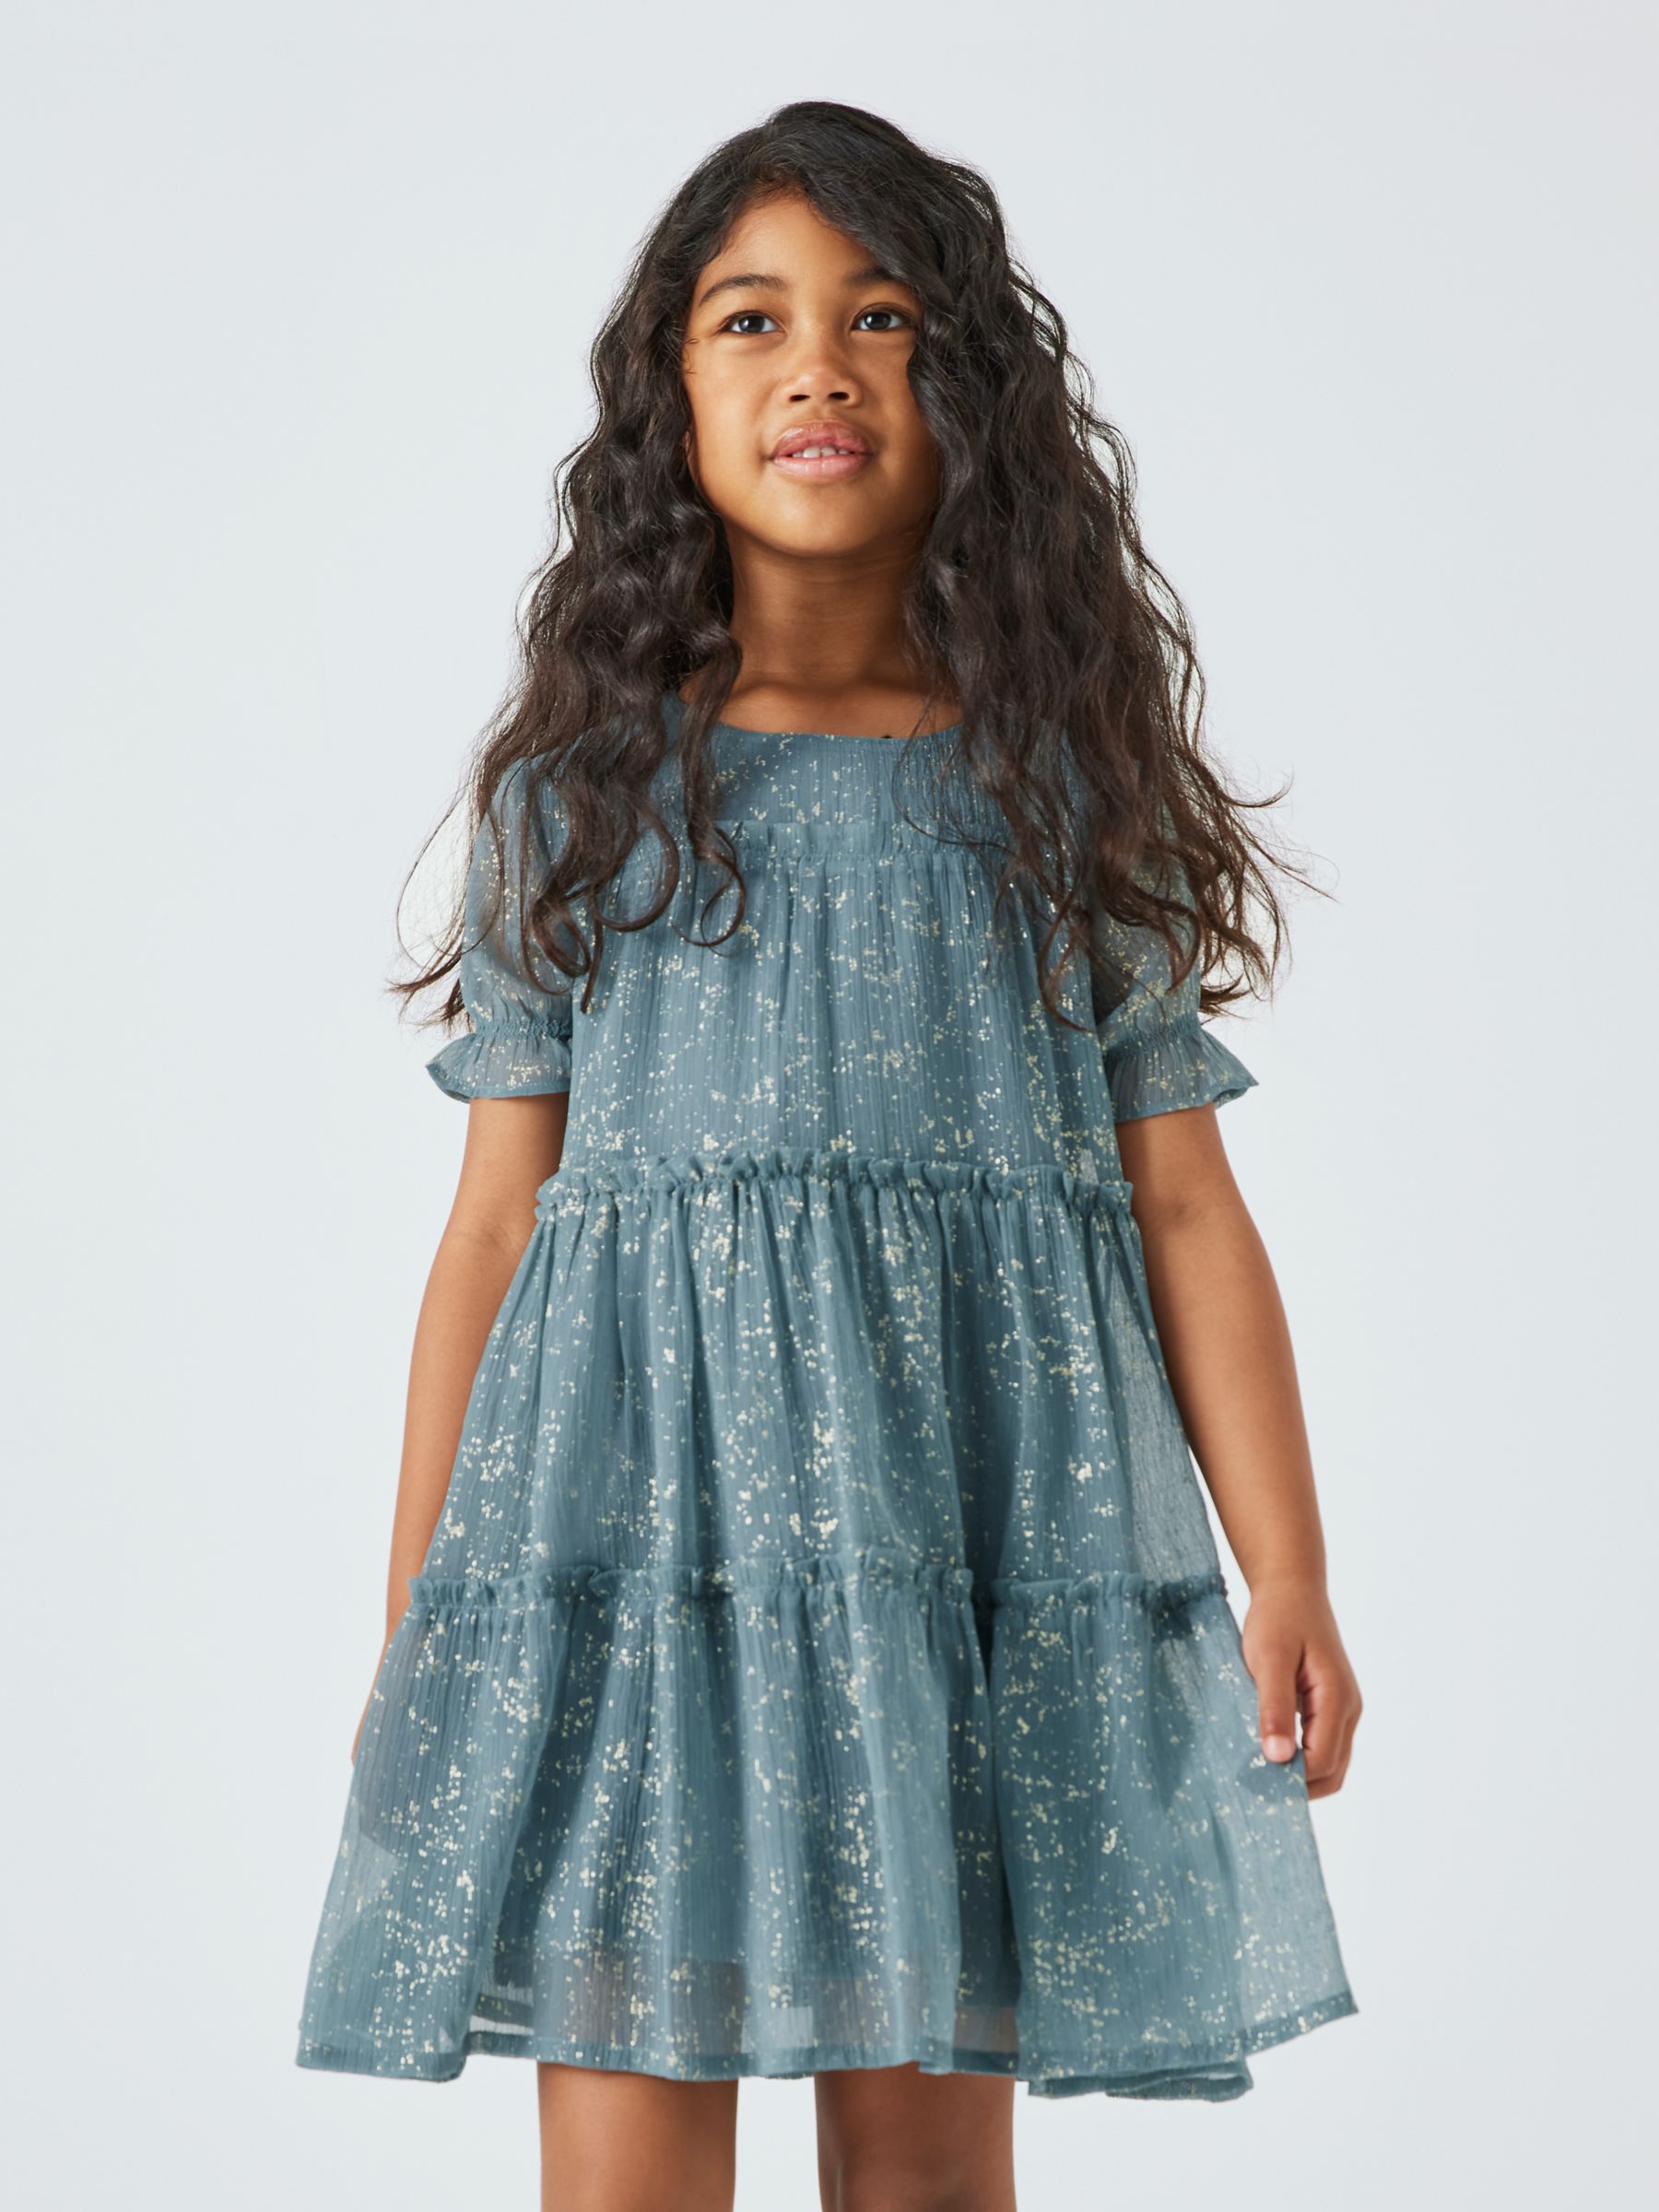 John Lewis Kids' Foil Shimmer Tiered Dress, Teal Blue at John Lewis ...